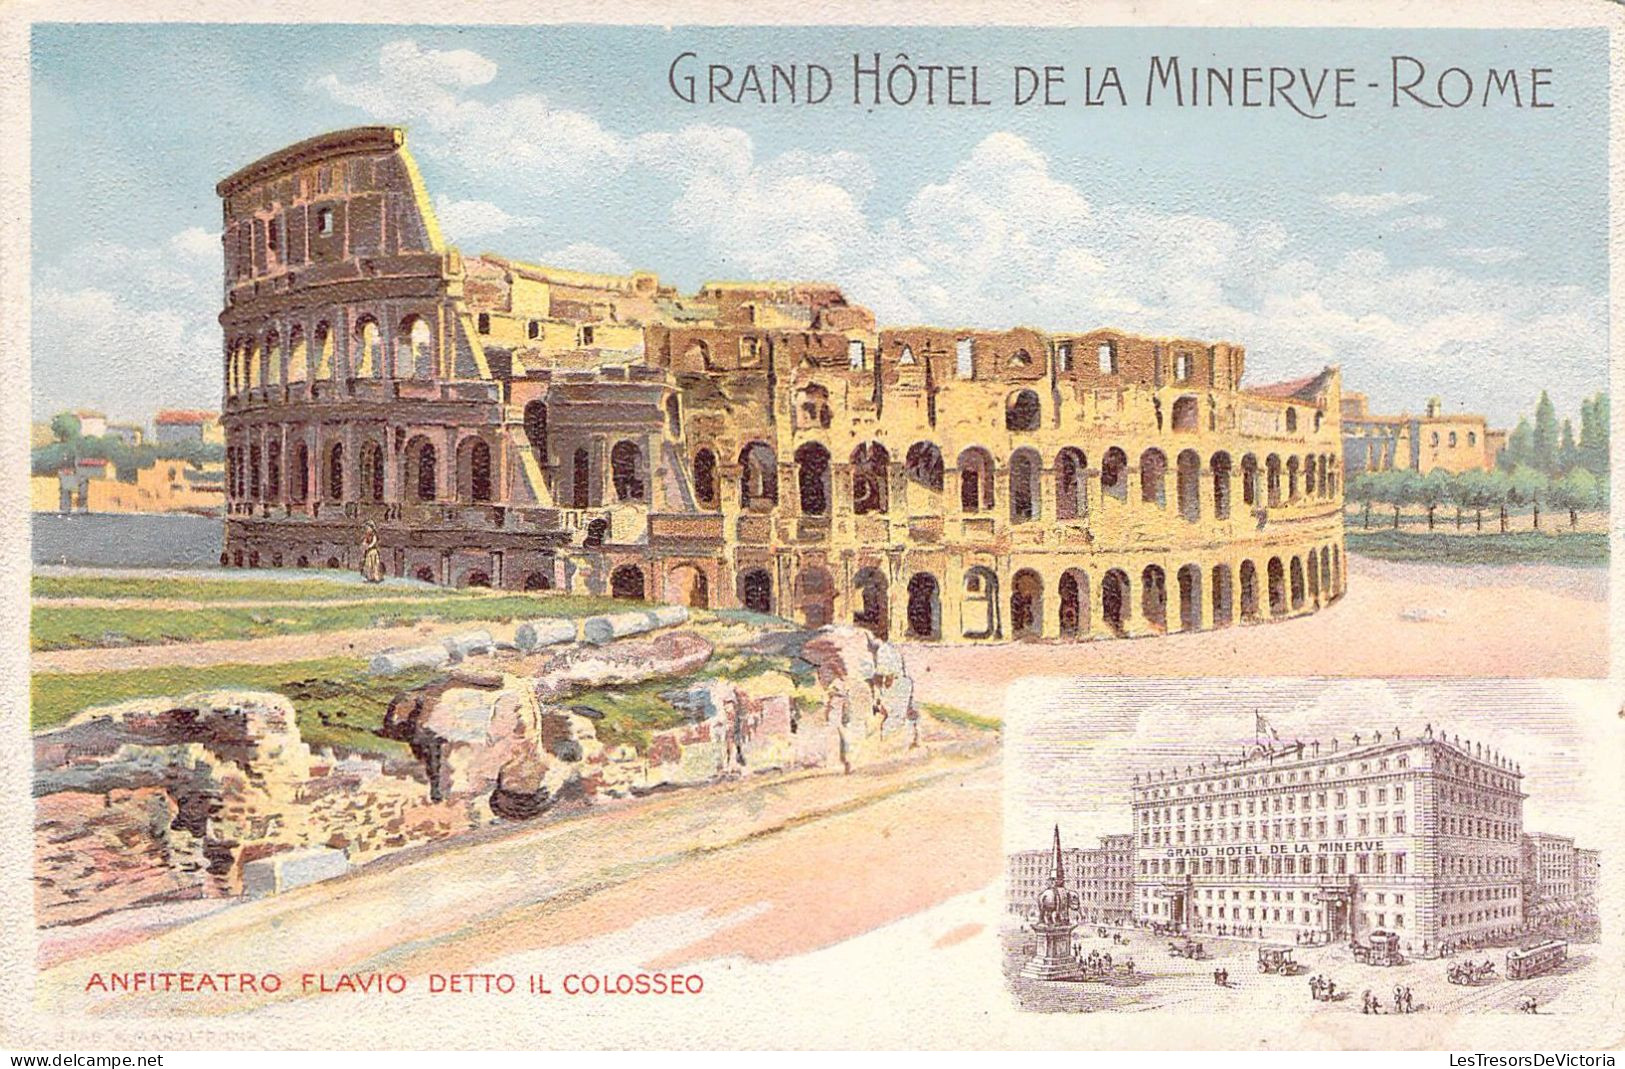 ILTALIE - ROMA - Grand Hotel De La Minerve - Anfiteatro Flavio Detto Il Colisseo  - Carte Postale Ancienne - Andere Monumente & Gebäude